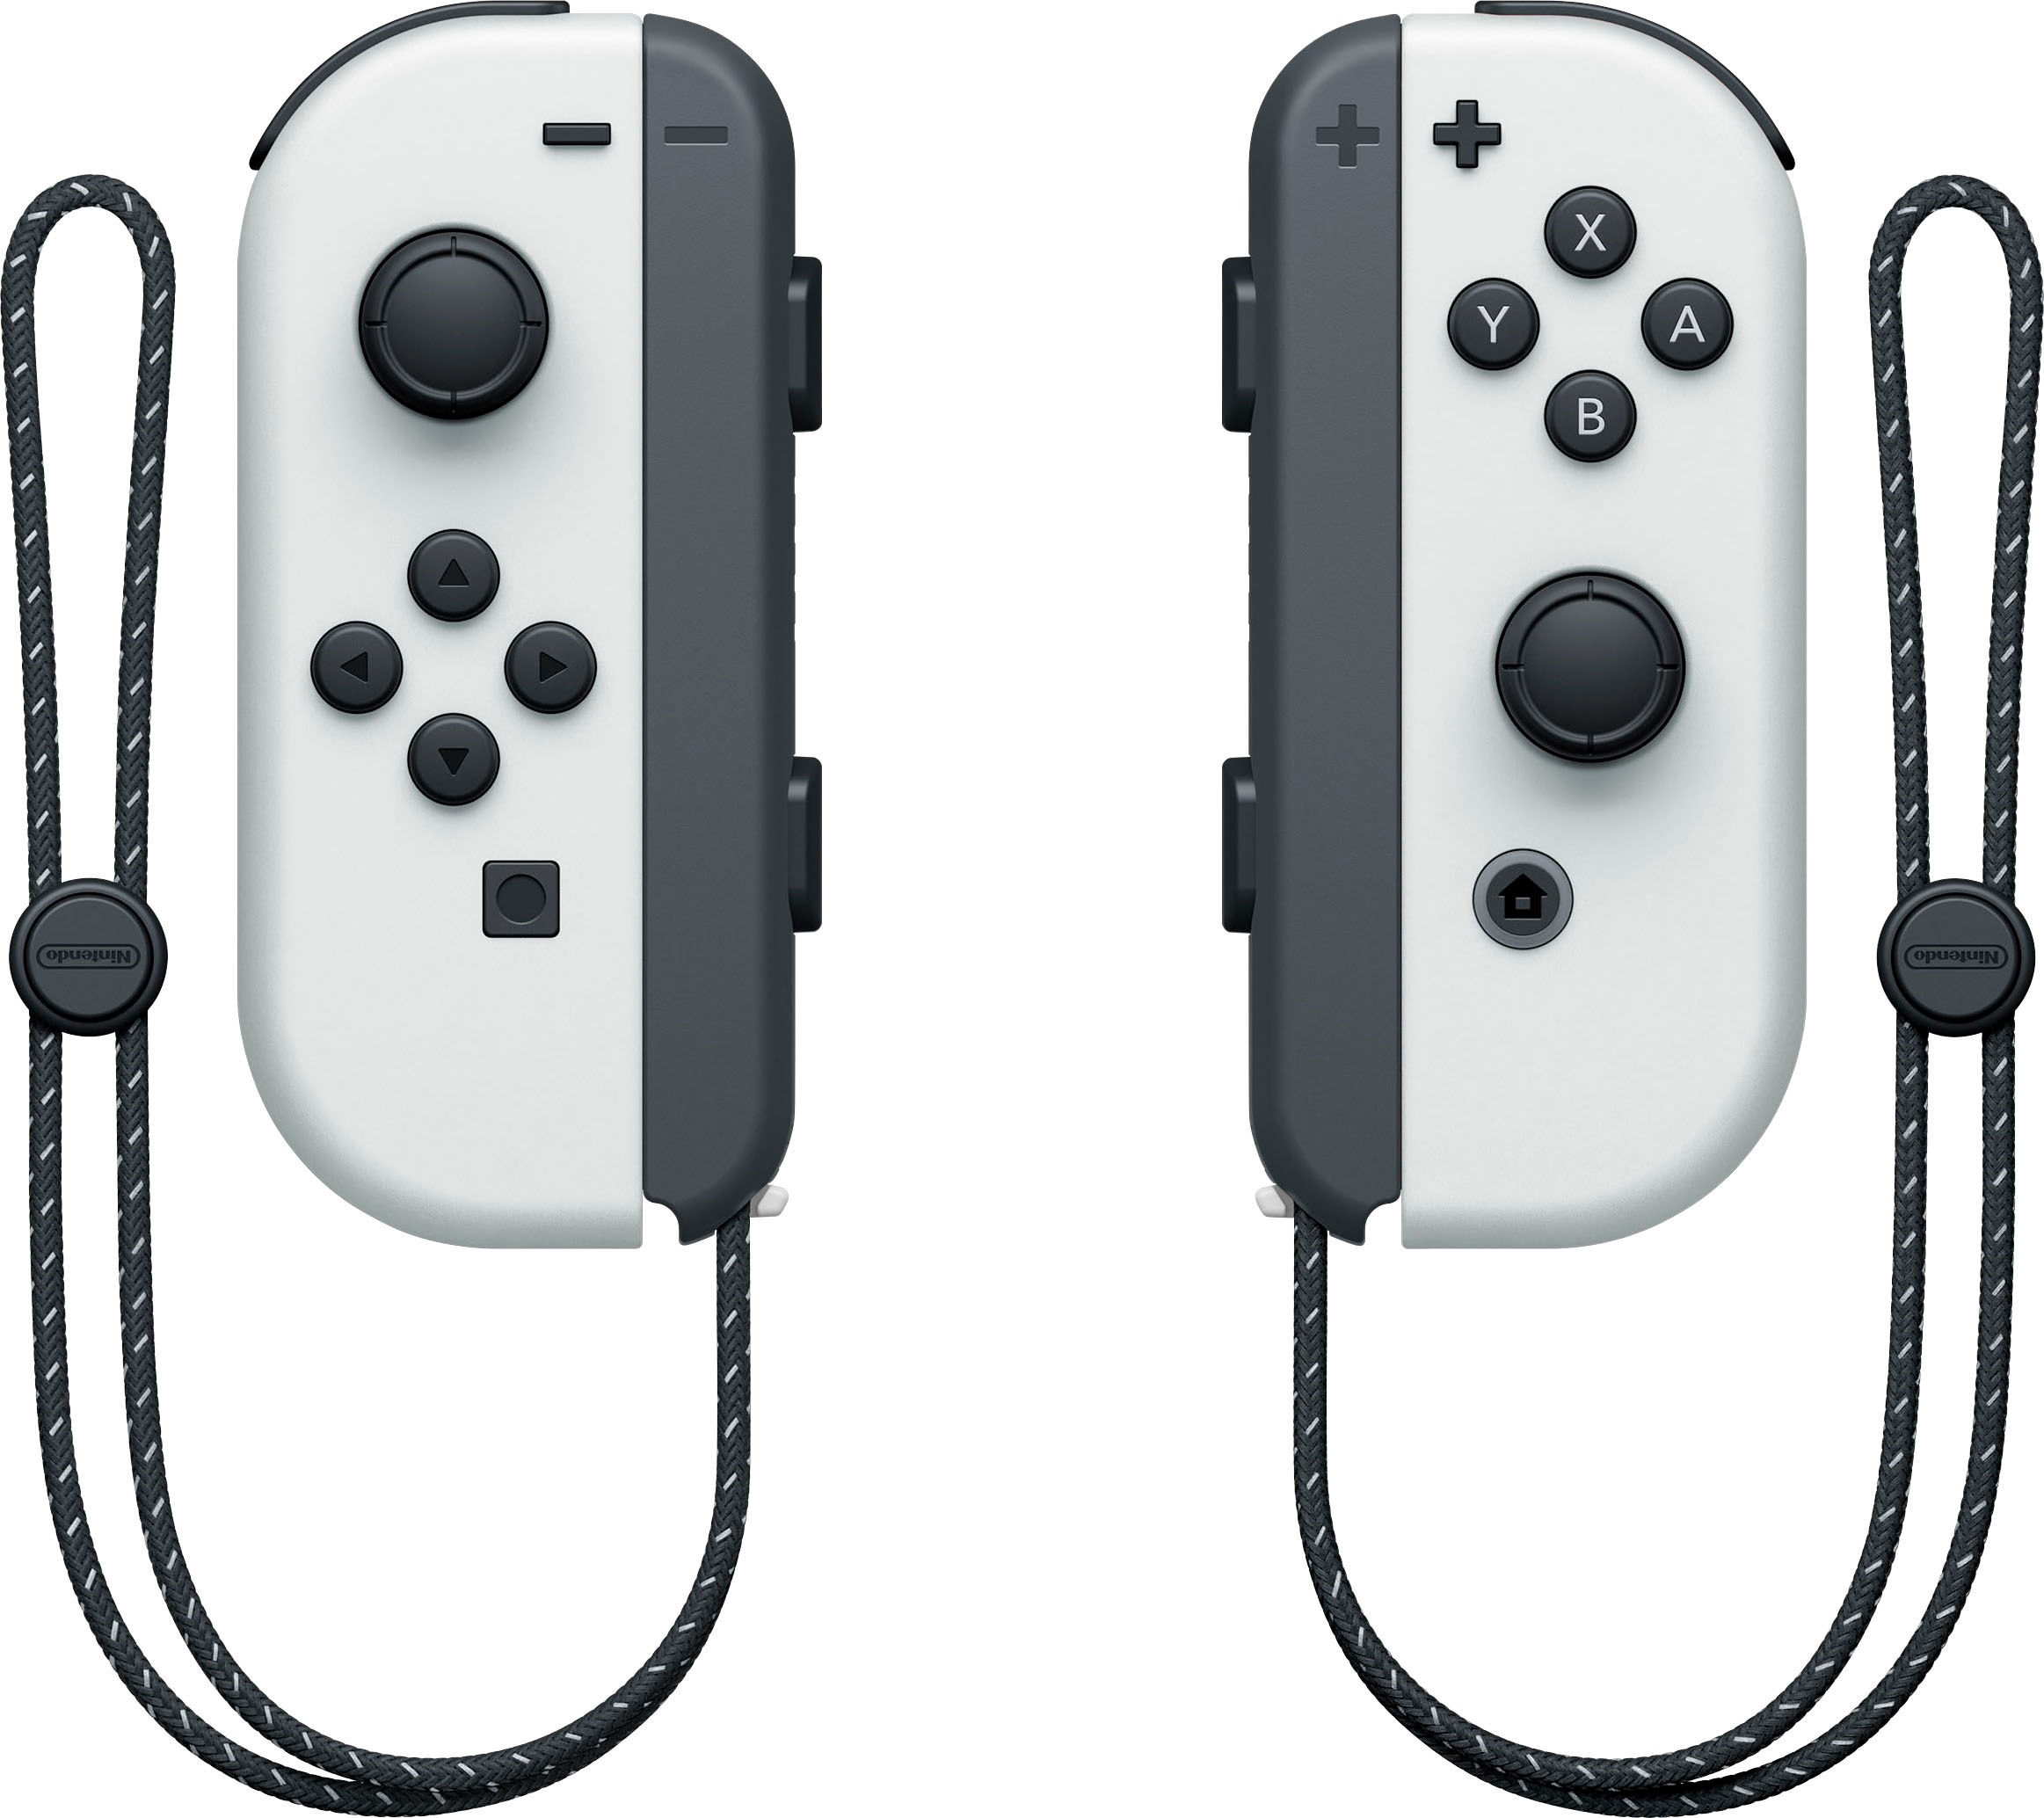 Nintendo Switch Spielekonsole, OLED-Modell, inkl. Switch Sports